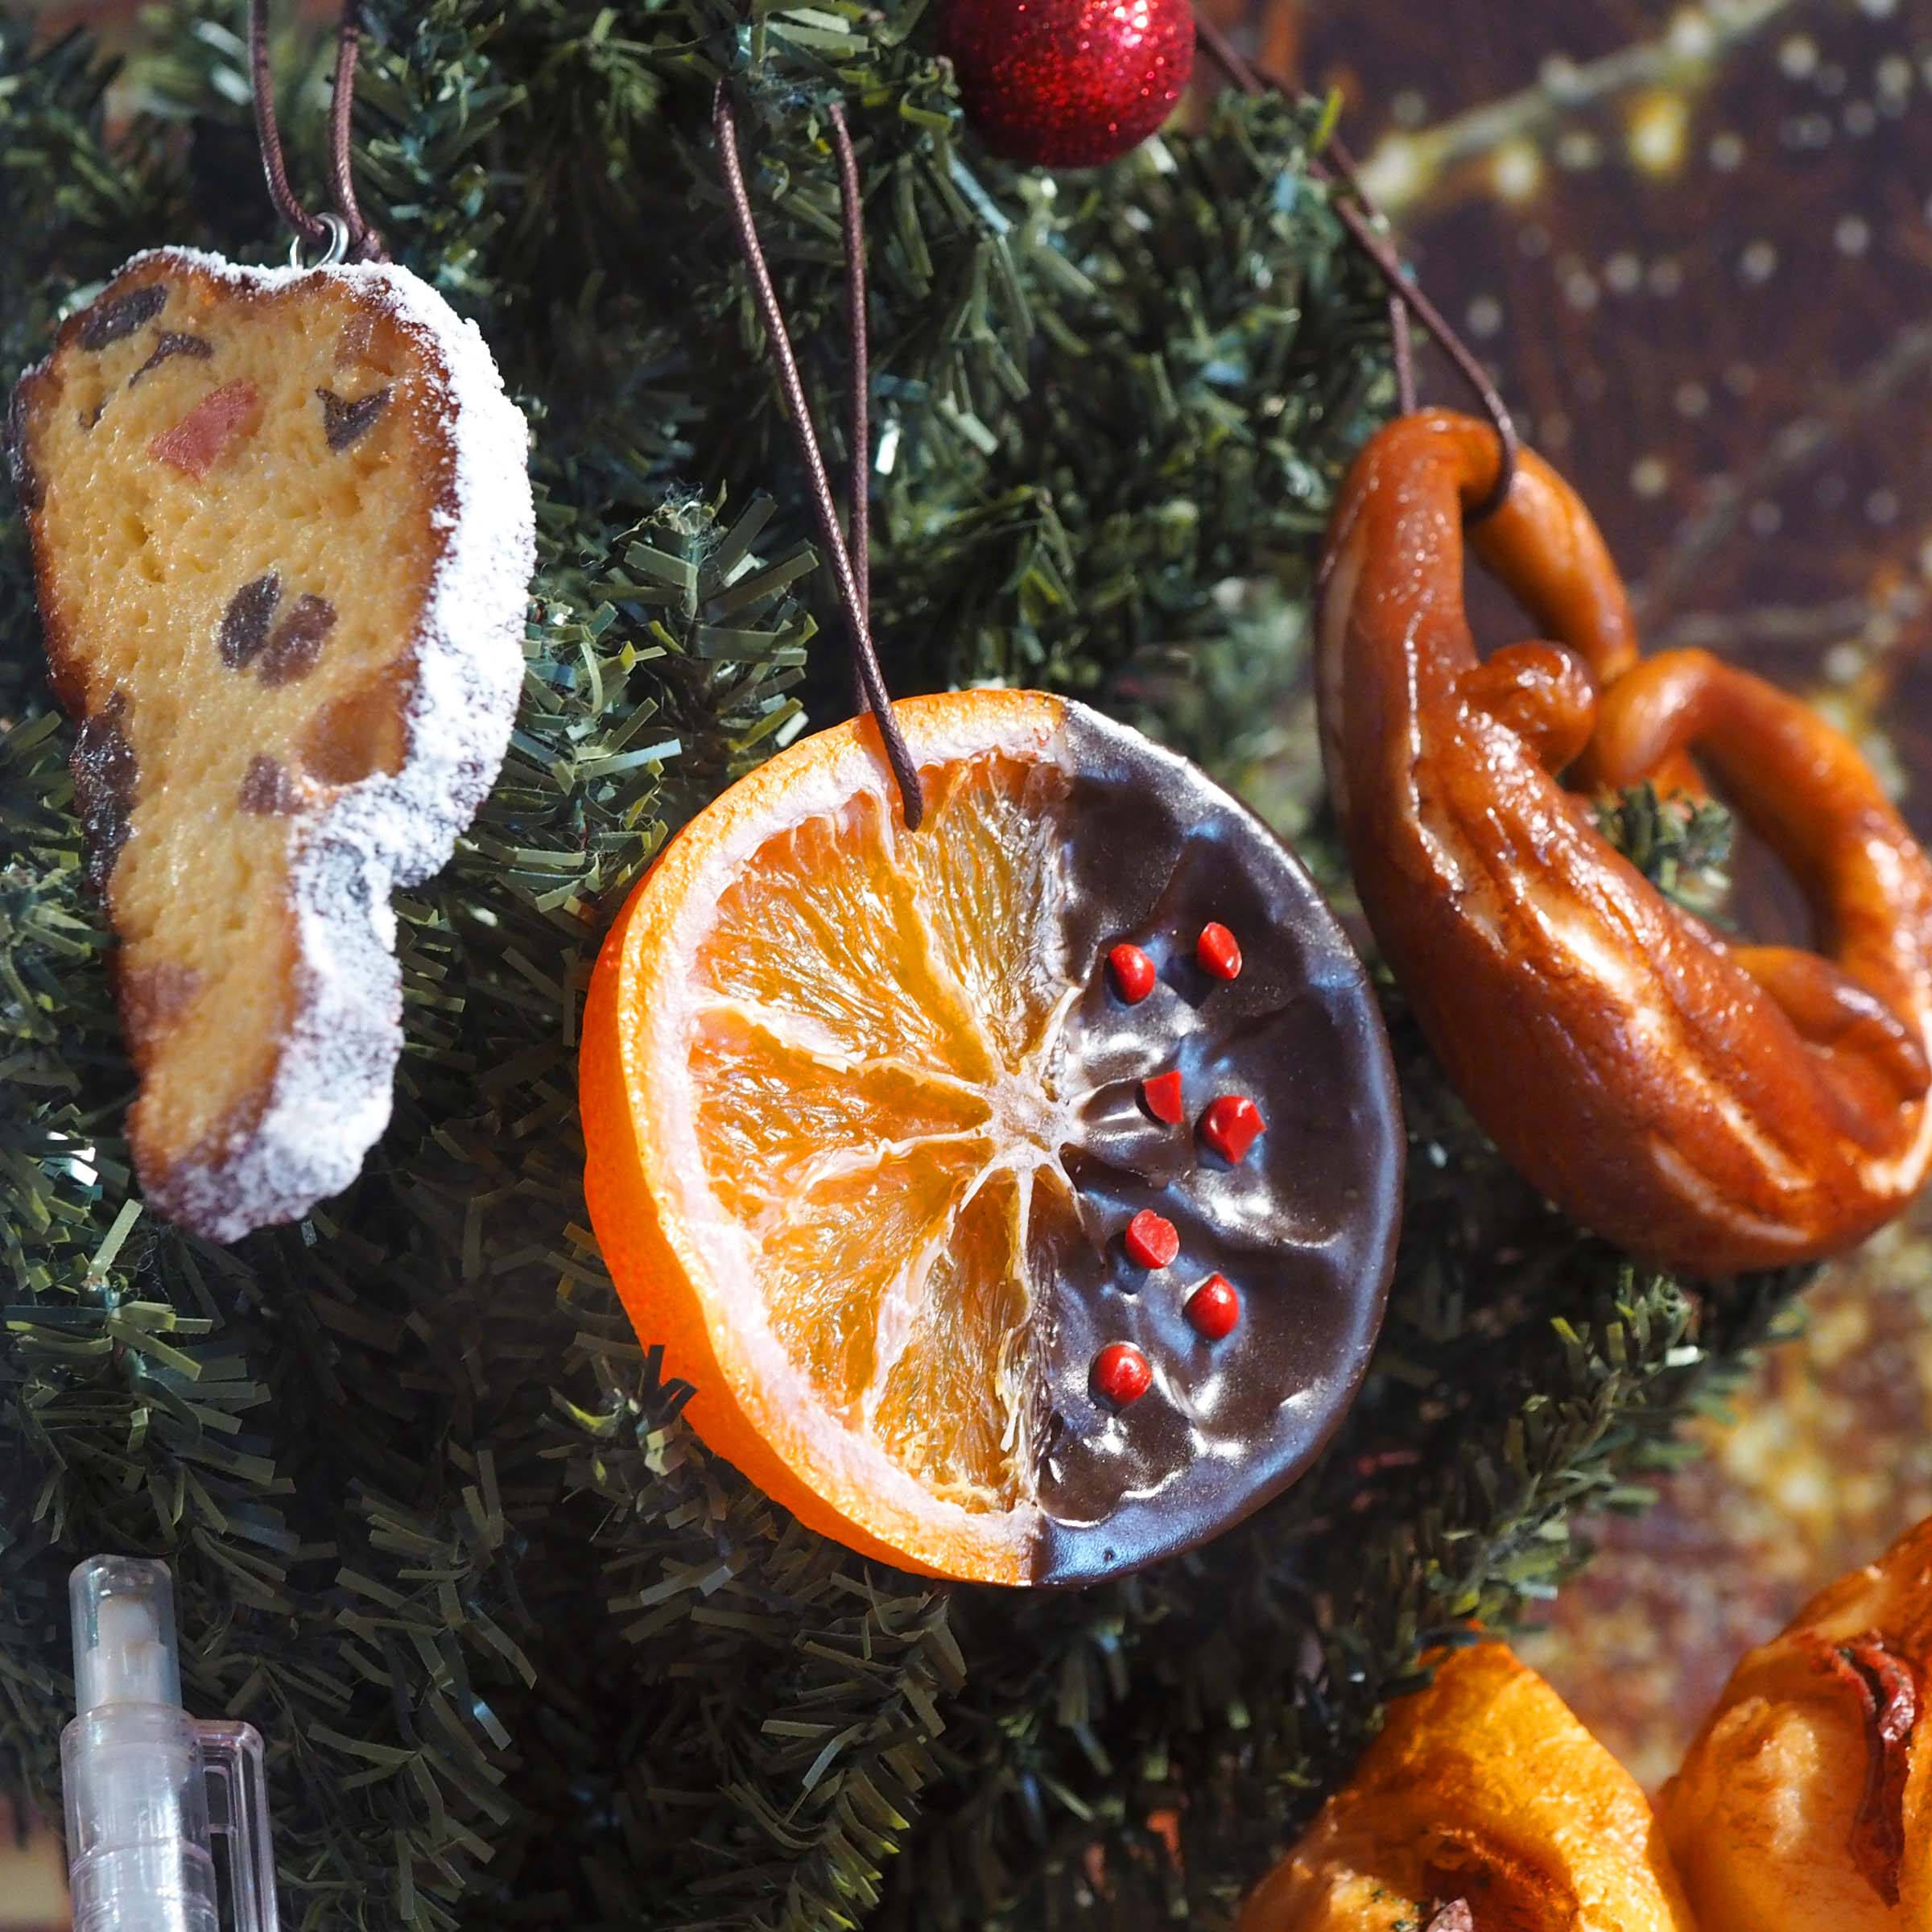 これは元祖食品サンプル屋【クリスマス限定】ヨーロッパ菓子のオーナメントオレンジの使用イメージ写真です。